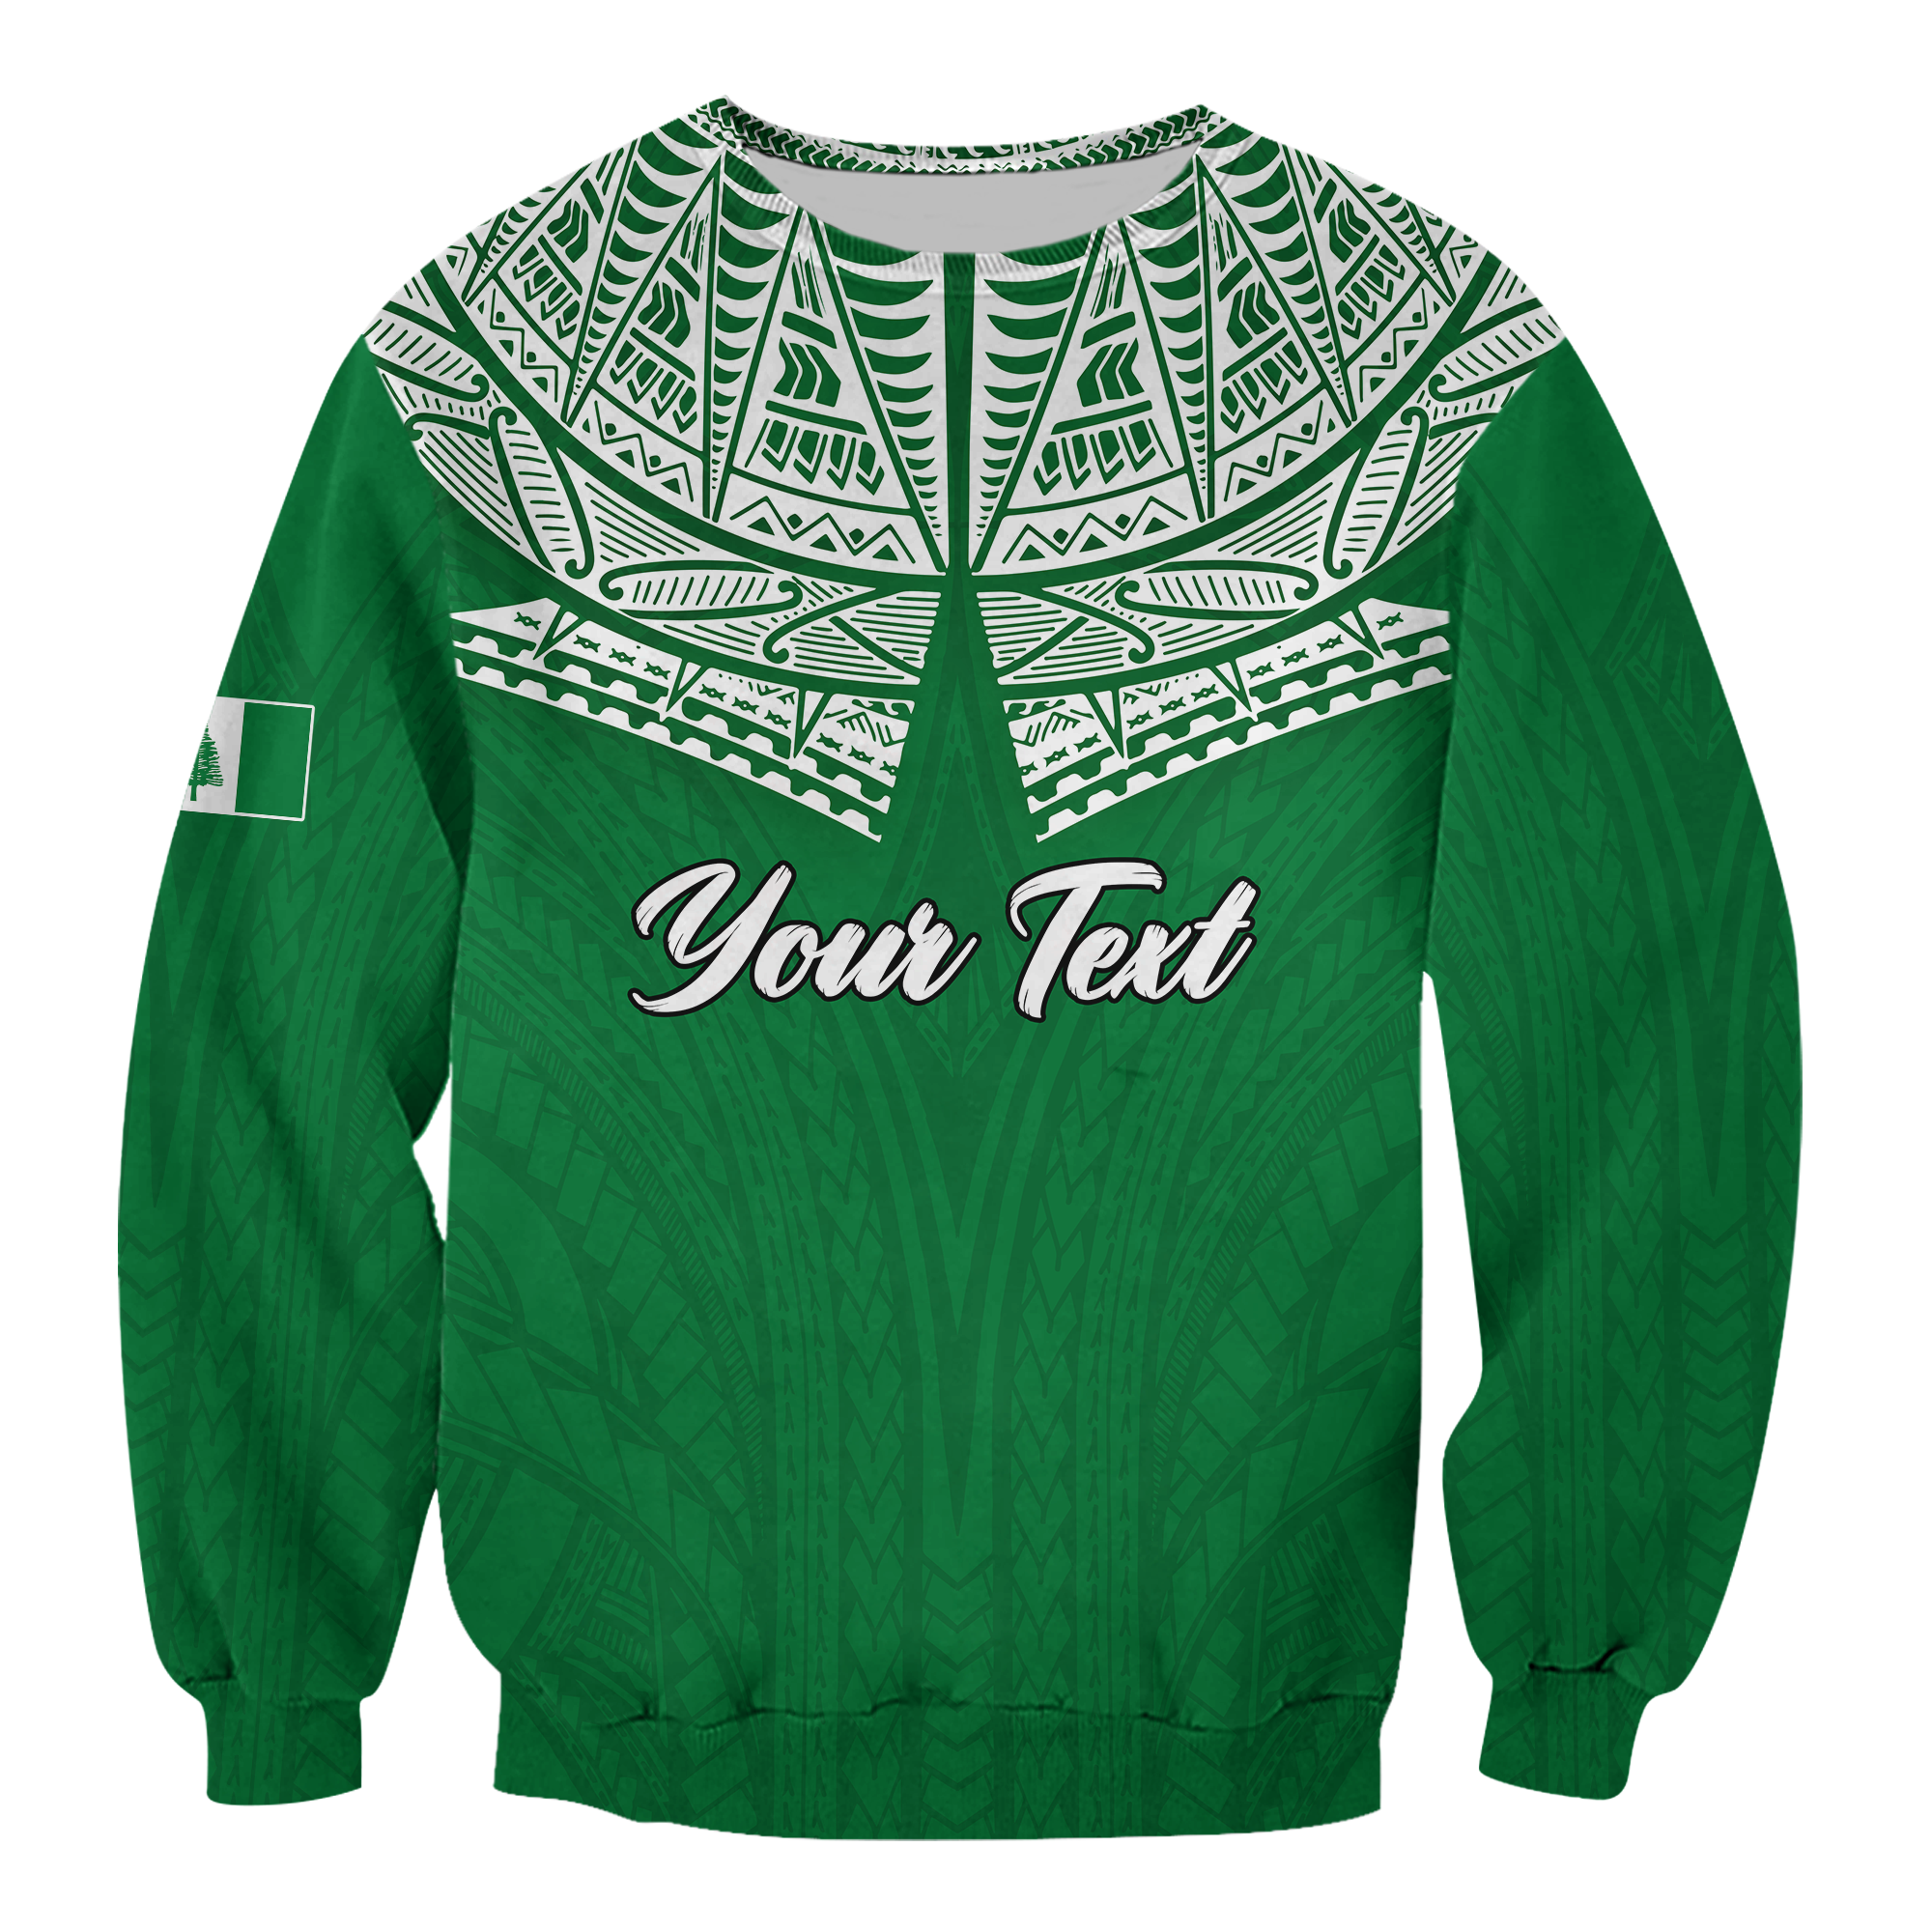 (Custom Personalised) Norfolk Islands Pine Tree Sweatshirt - LT12 Unisex Green - Polynesian Pride